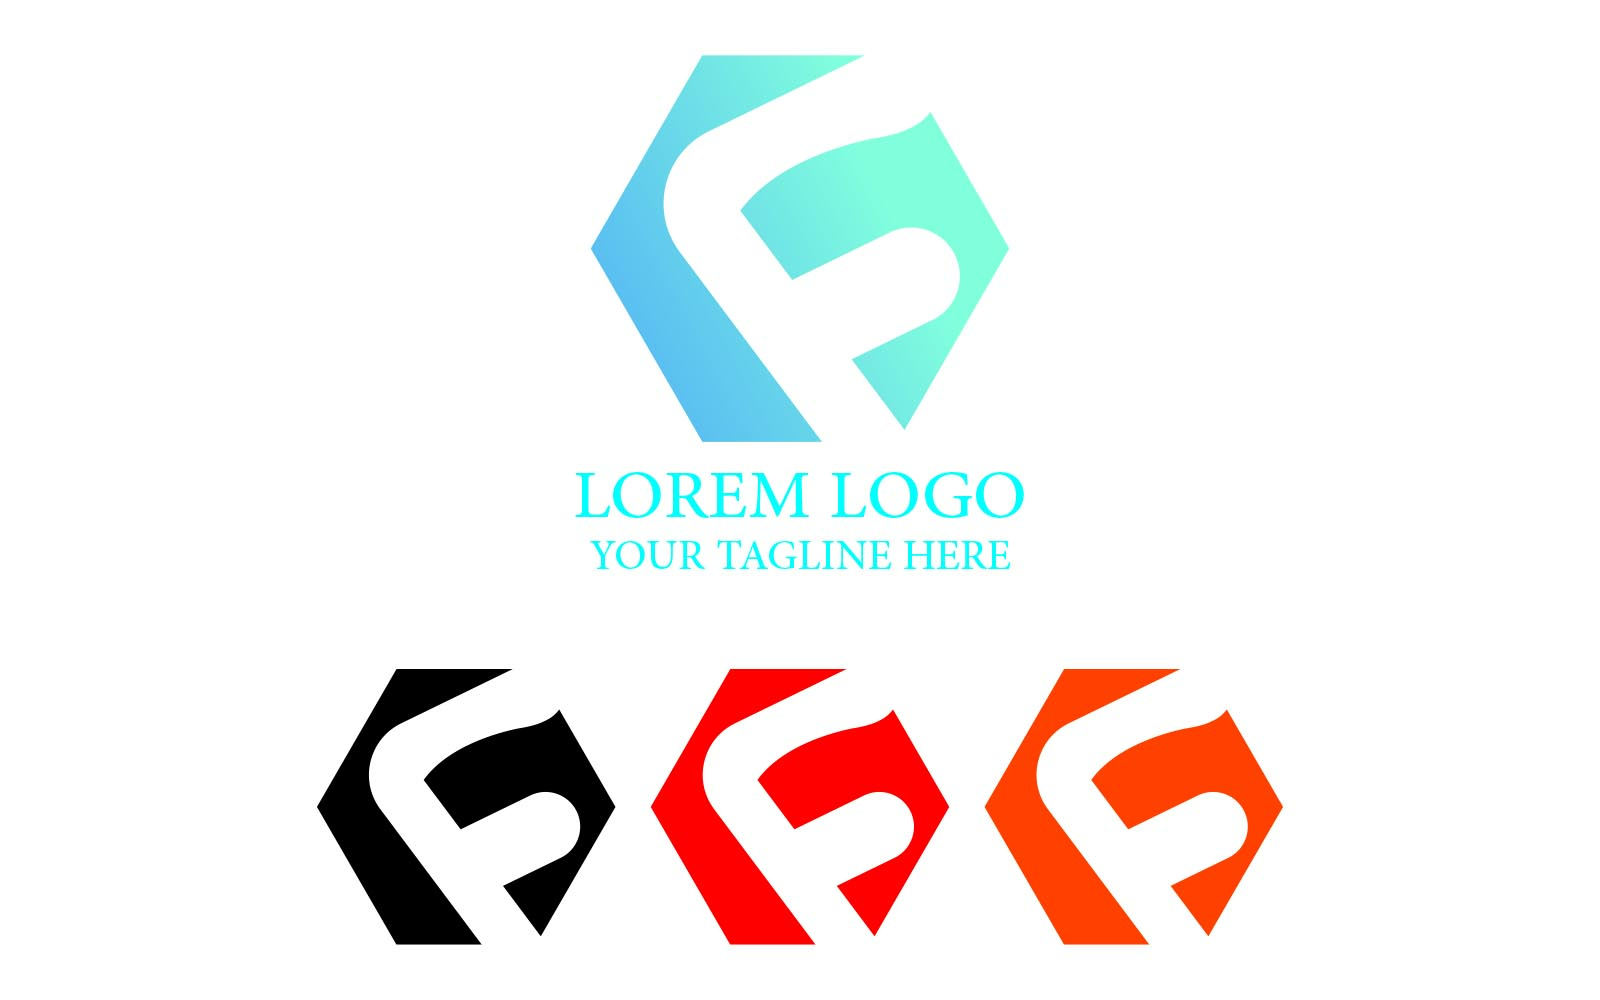 Lorem Logo - Letter F Logo